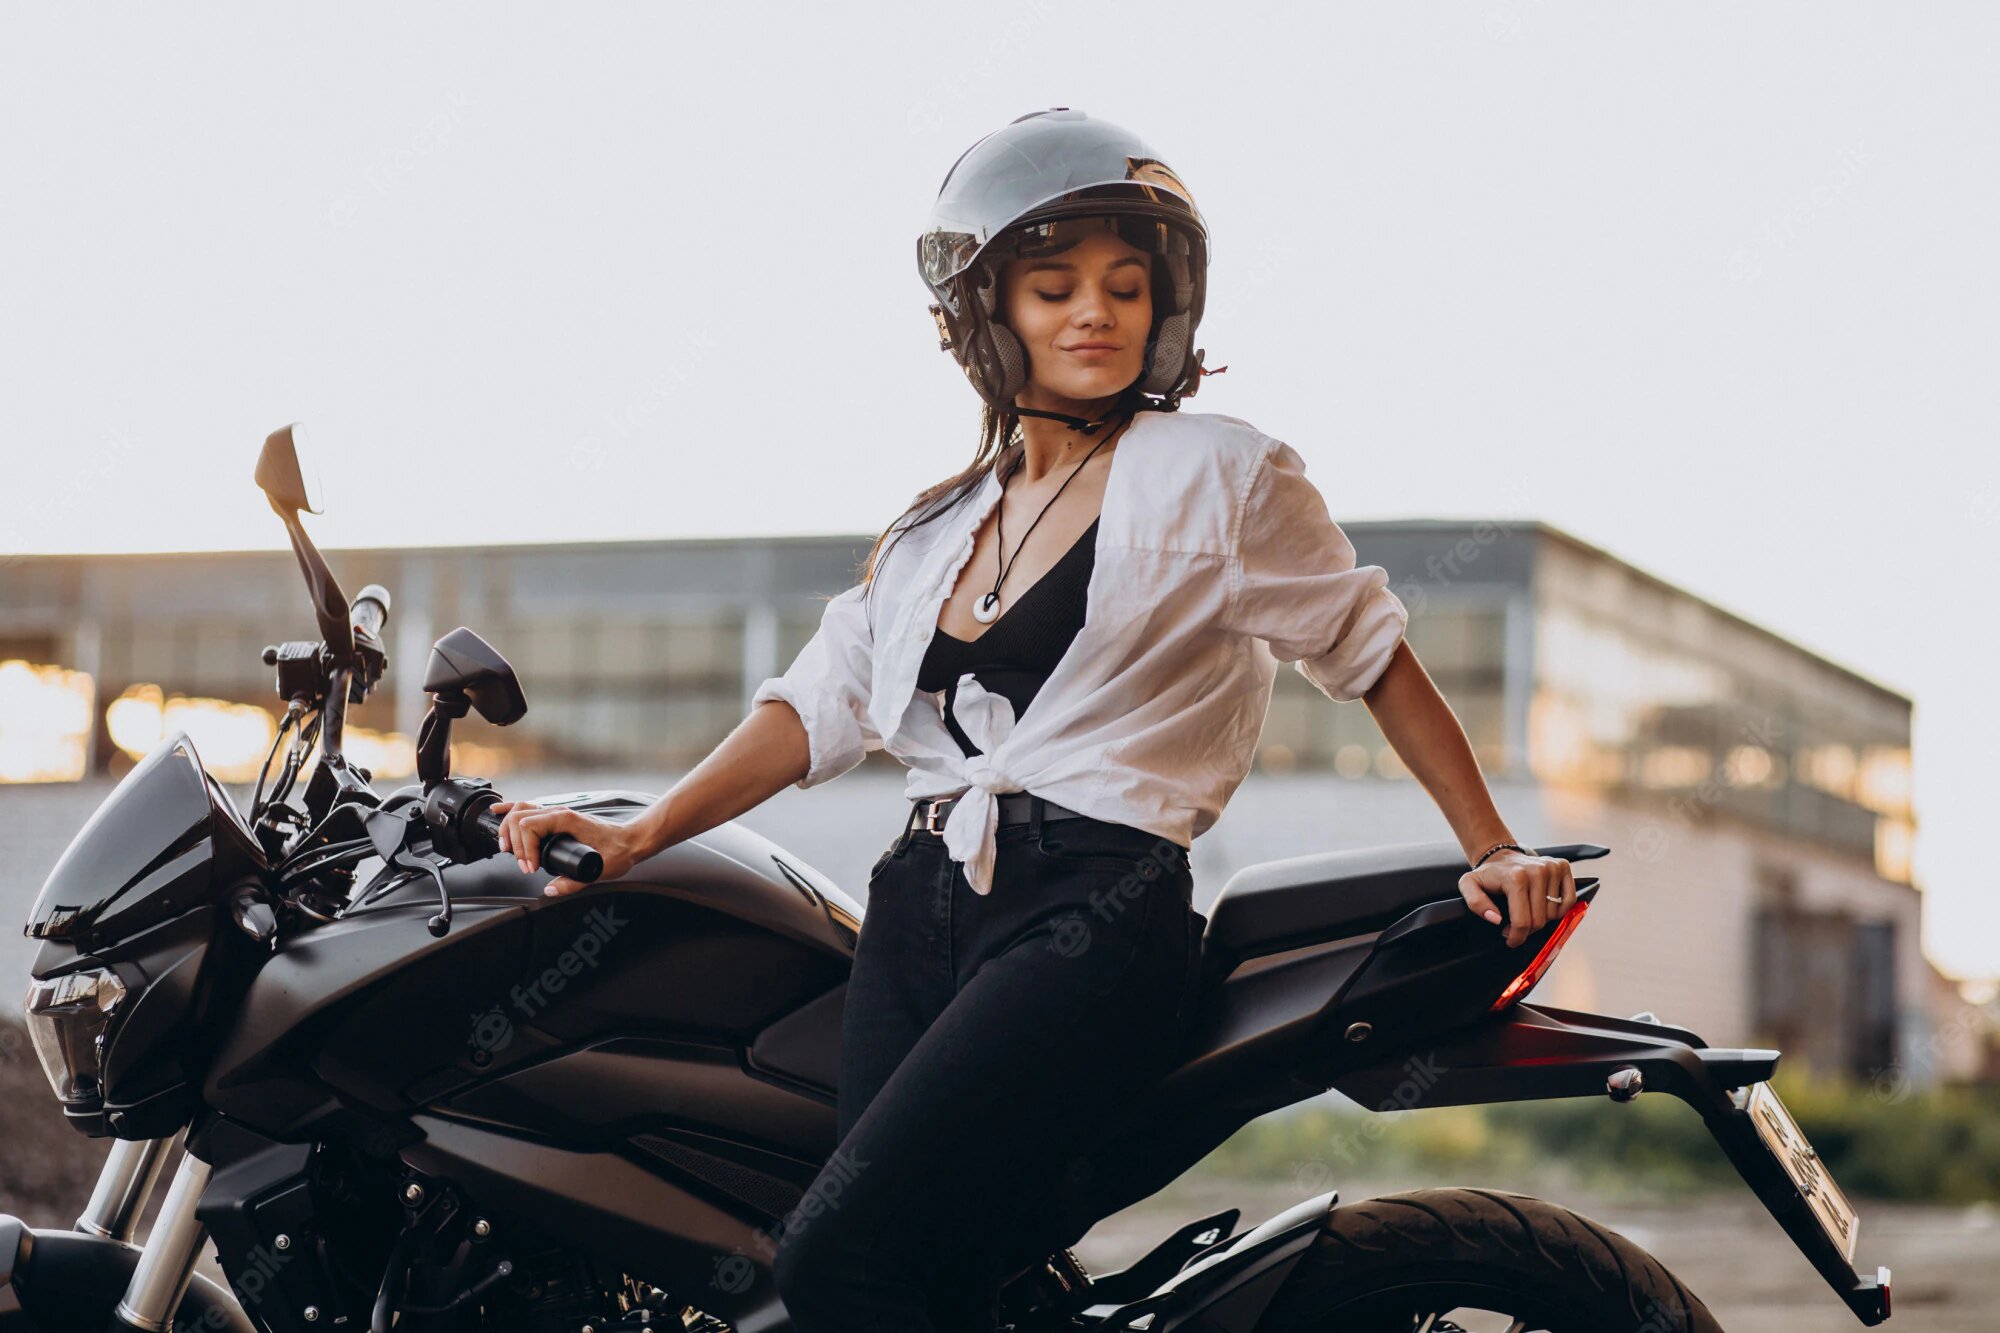 Los conocías? Estos son los mejores cascos de motos para mujer